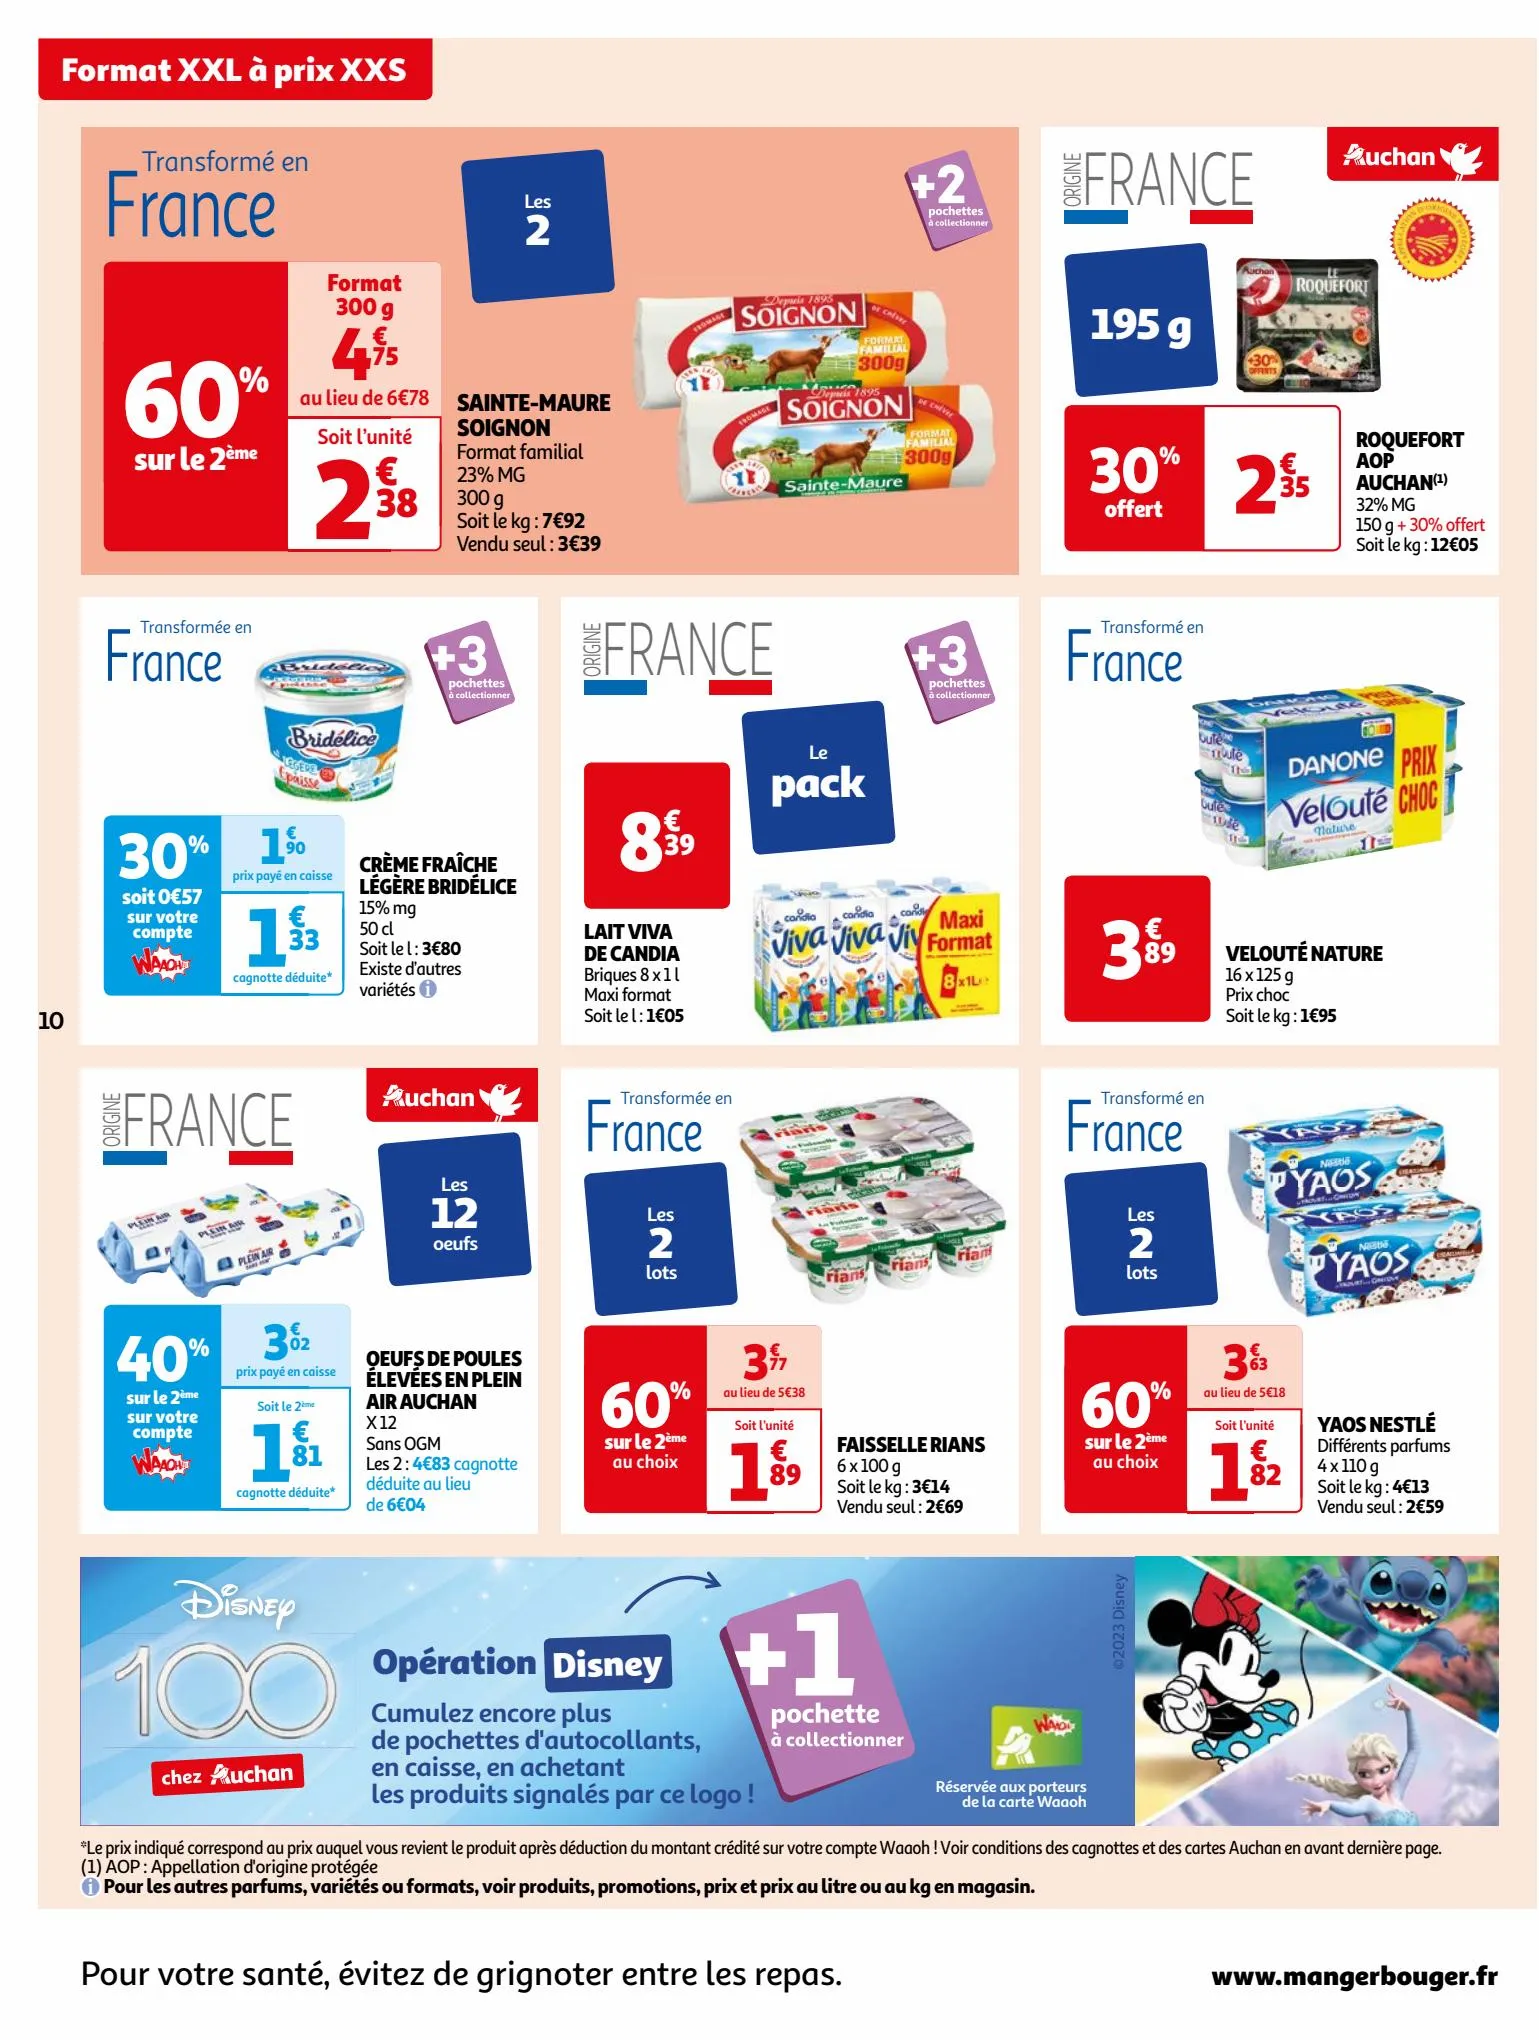 Catalogue Format XXL à prix XXS dans votre supermarché, page 00010